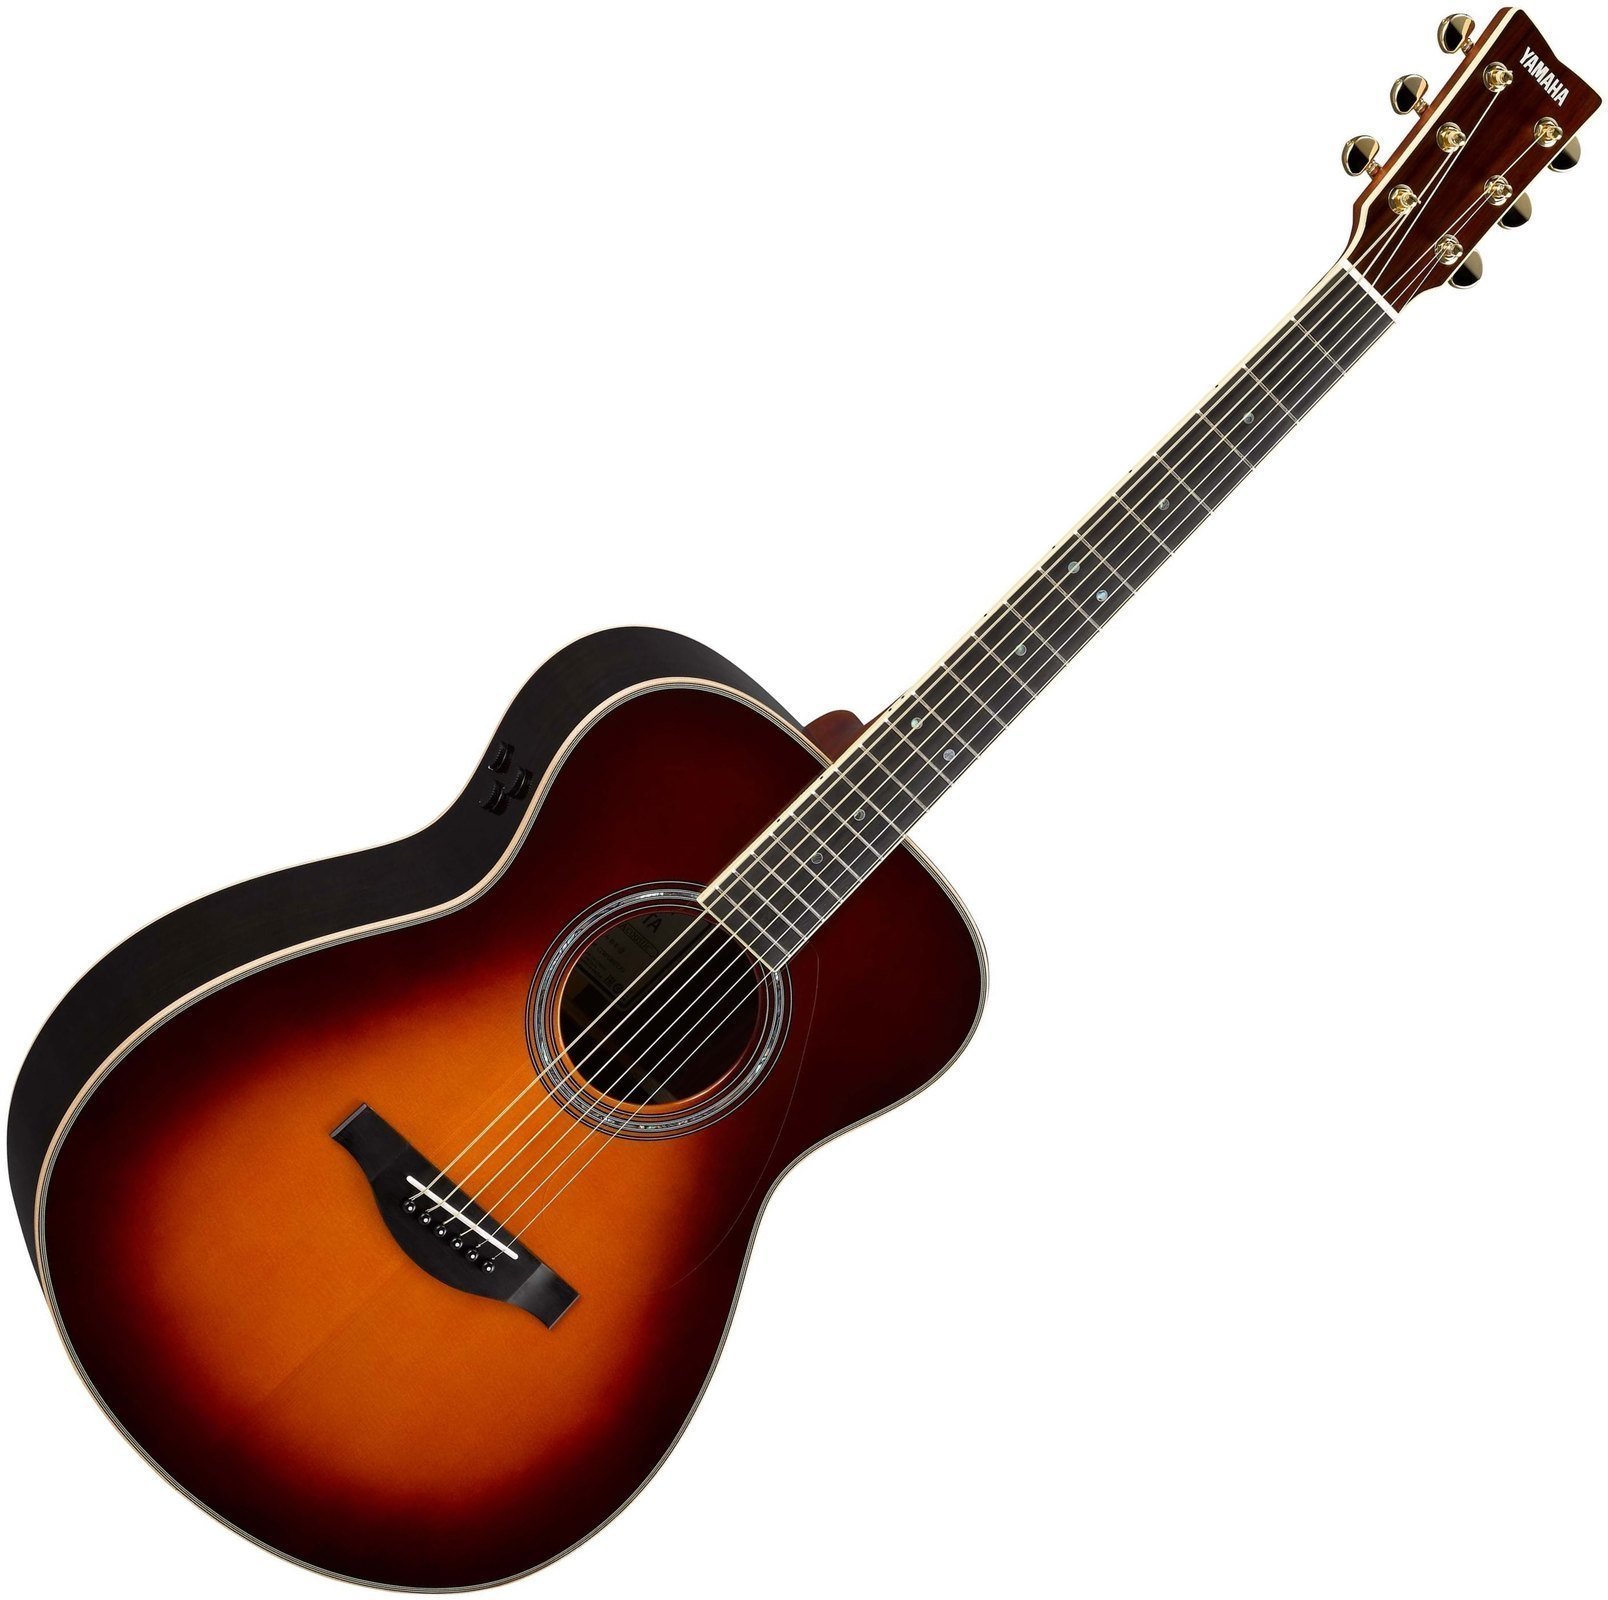 Ηλεκτροακουστική Κιθάρα Jumbo Yamaha LS-TA BS Brown Sunburst